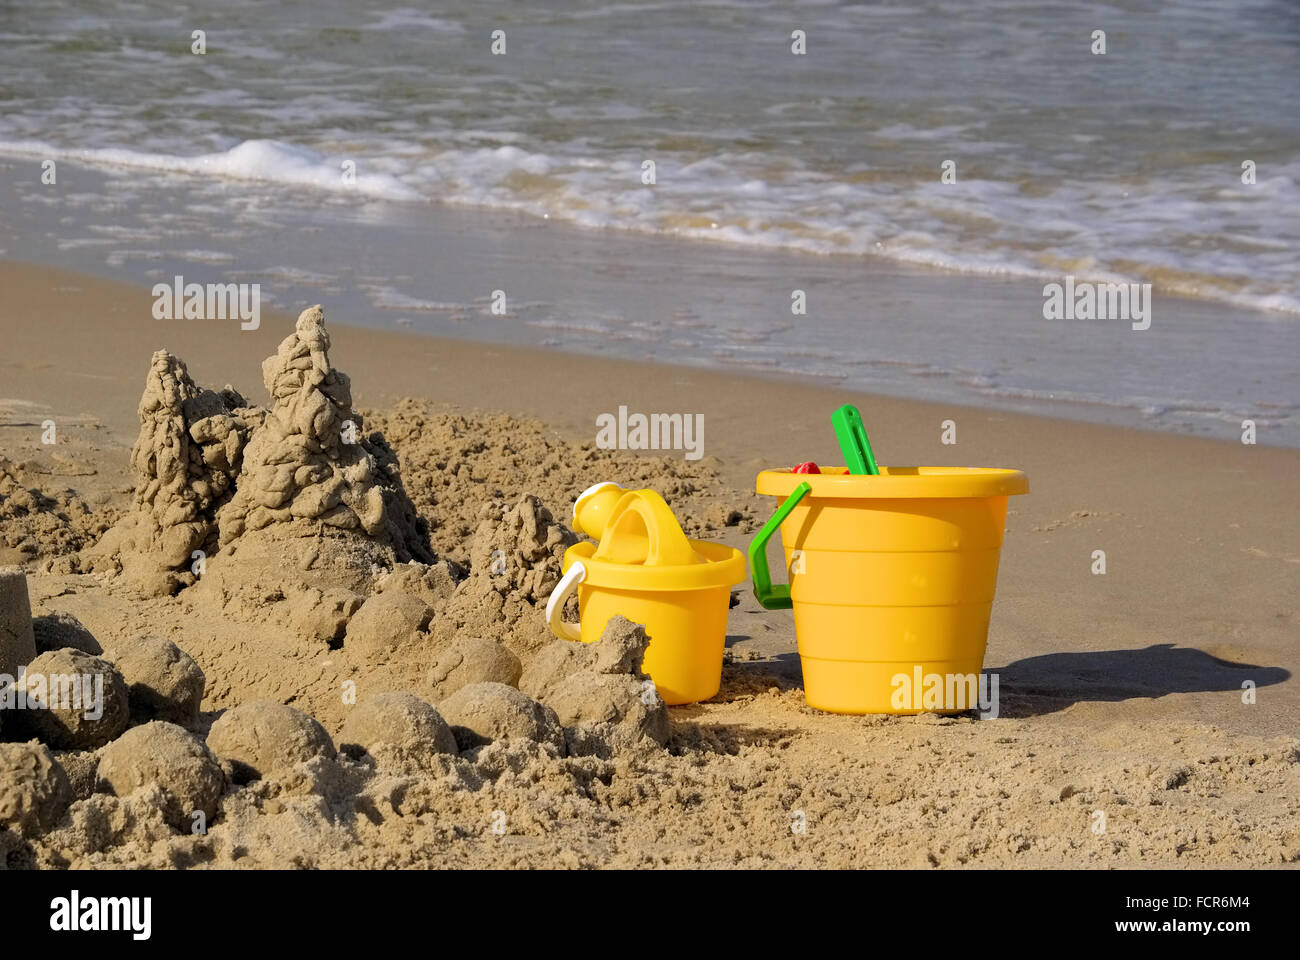 Strandspielzeug - Strand Spielzeug 02 Stockfoto